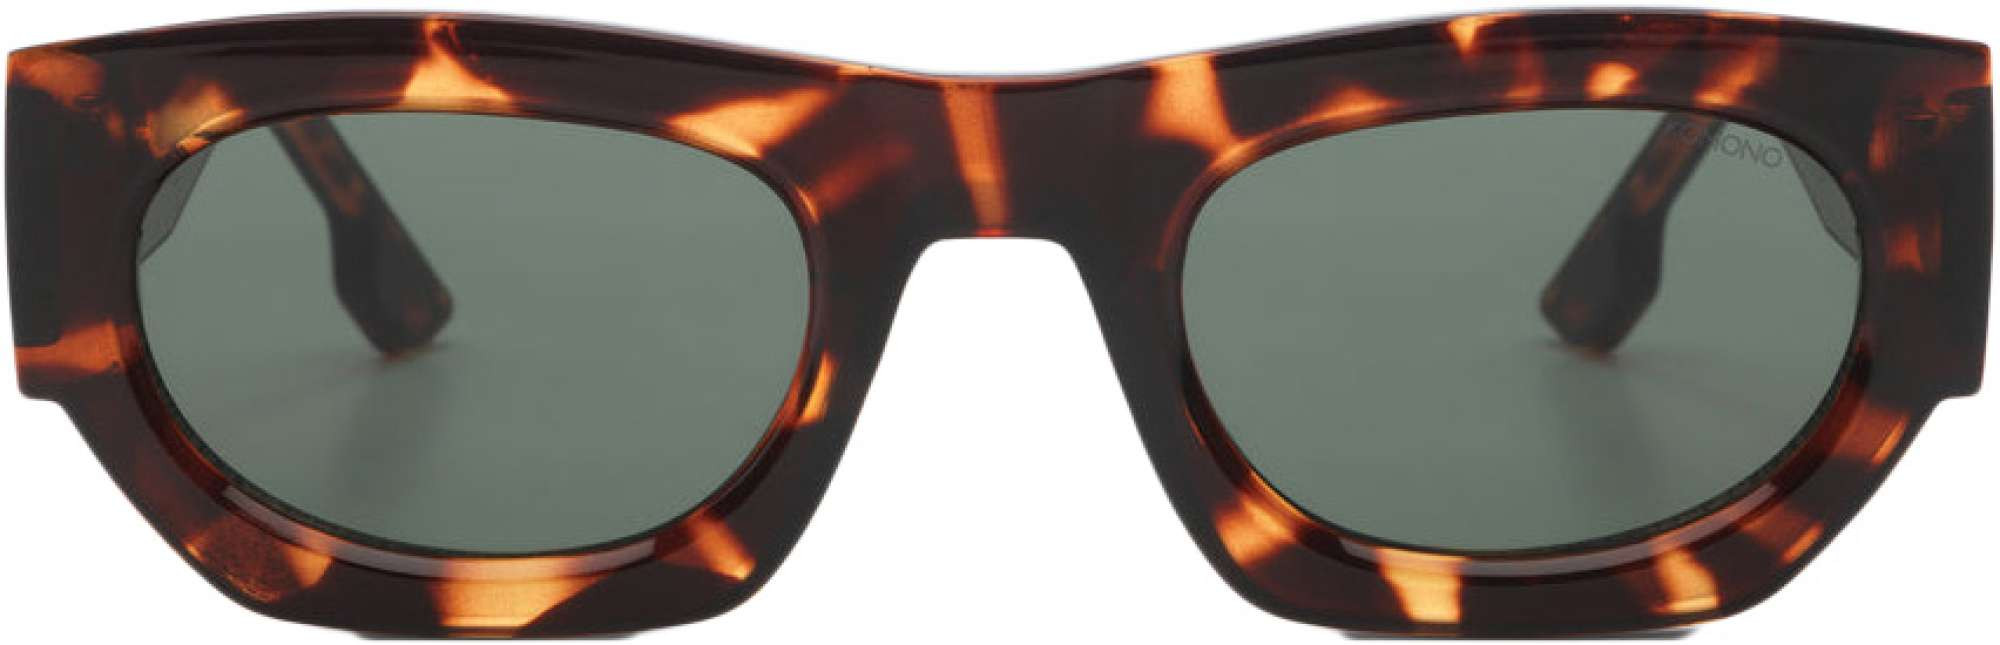 Afbeelding van Komono Alpha havana sunglasses